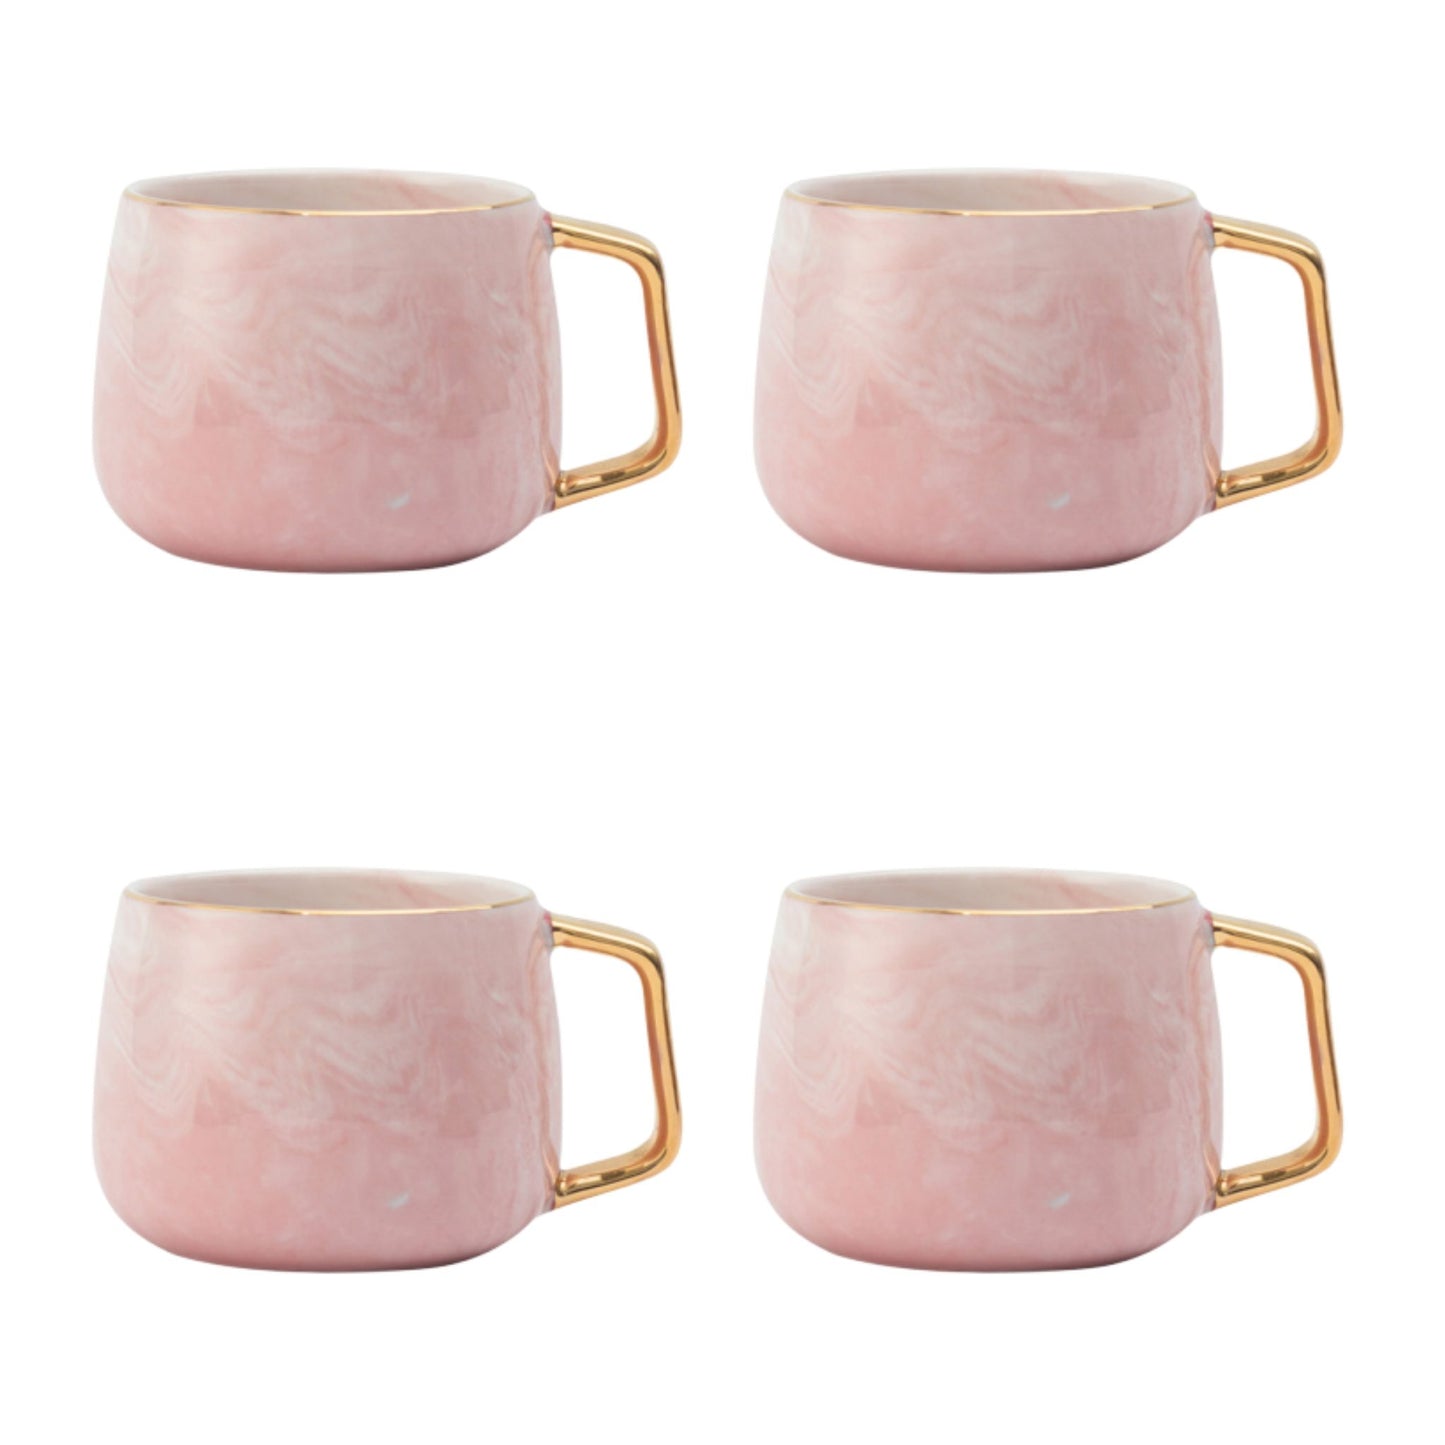 Rosa Marmor Tasse Eckiger Goldhenkel Schöne Tassen zum Verschenken Luxus Tassen Set Schönes Marmor Geschirr Luxus Geschirr mit Gold 4er Set